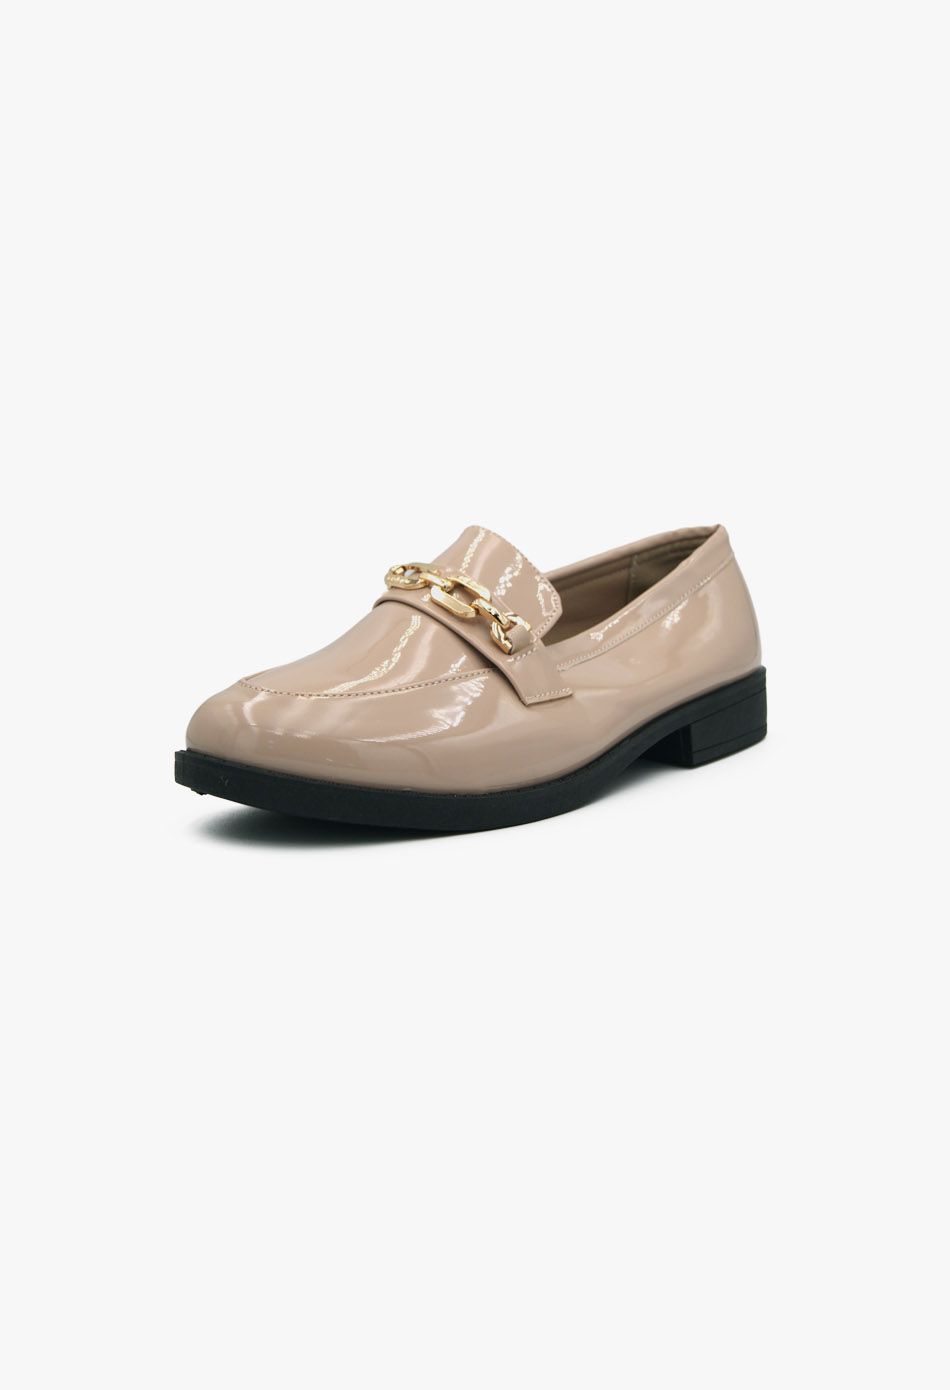 Γυναικεία Loafers σε Μπεζ Χρώμα Λουστρίνι / XY-622-beige Χαμηλά Παπούτσια joya.gr